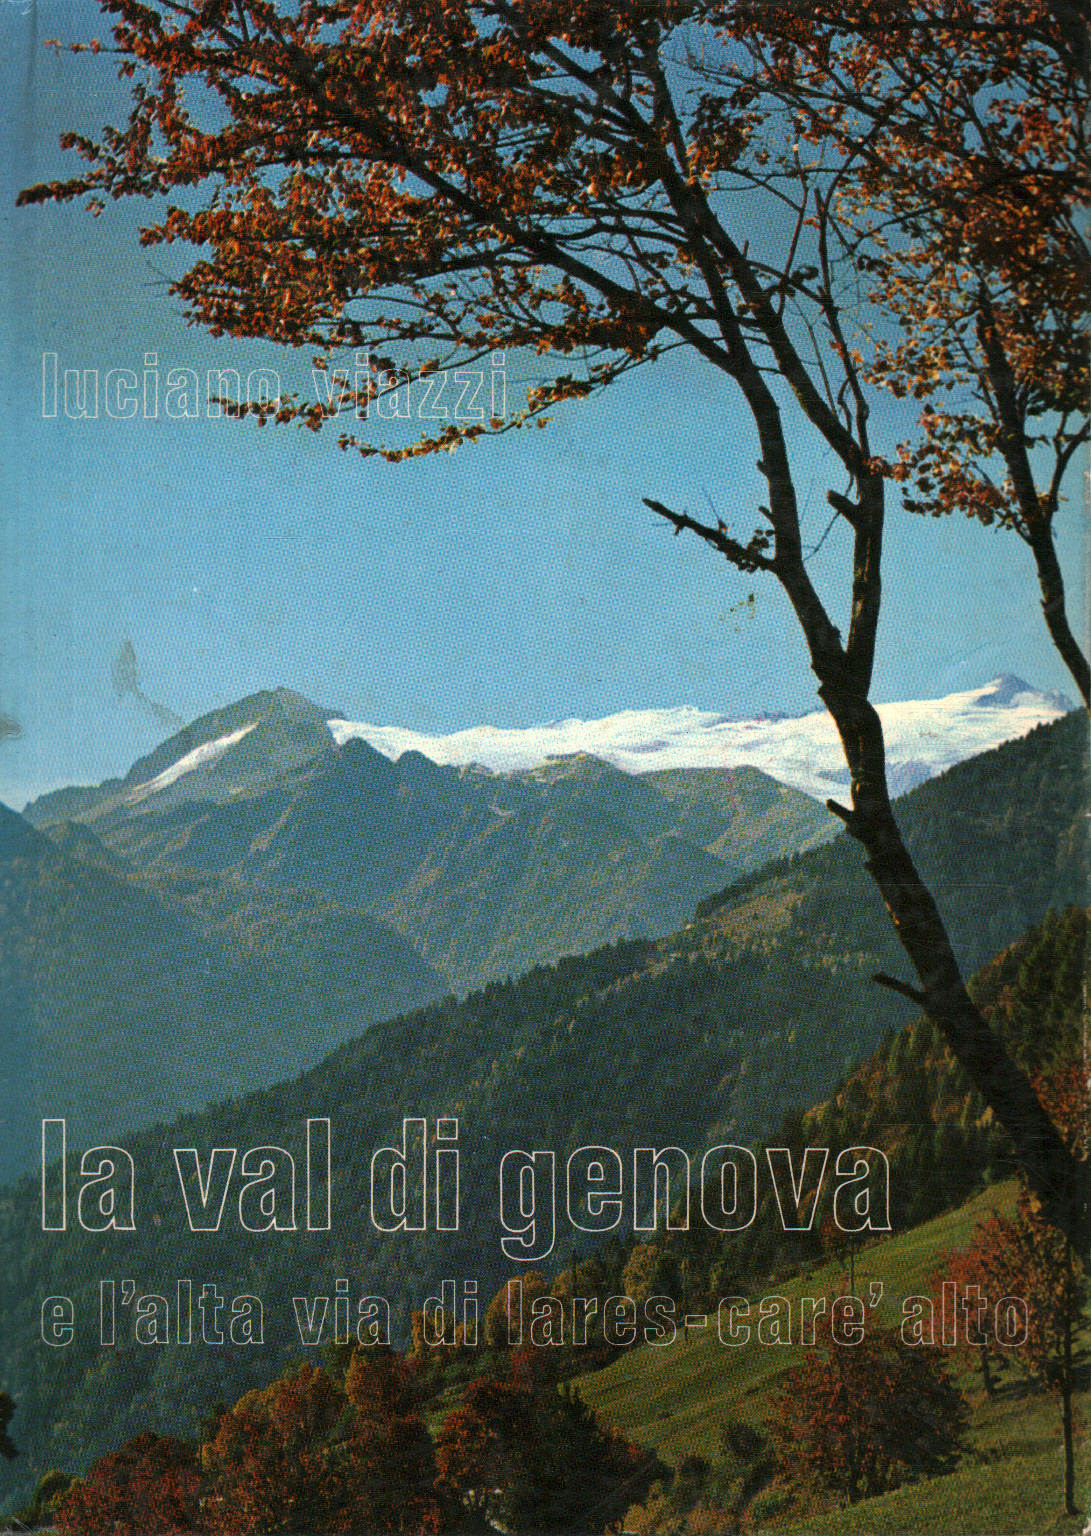 El Val di Genova y la Alta V